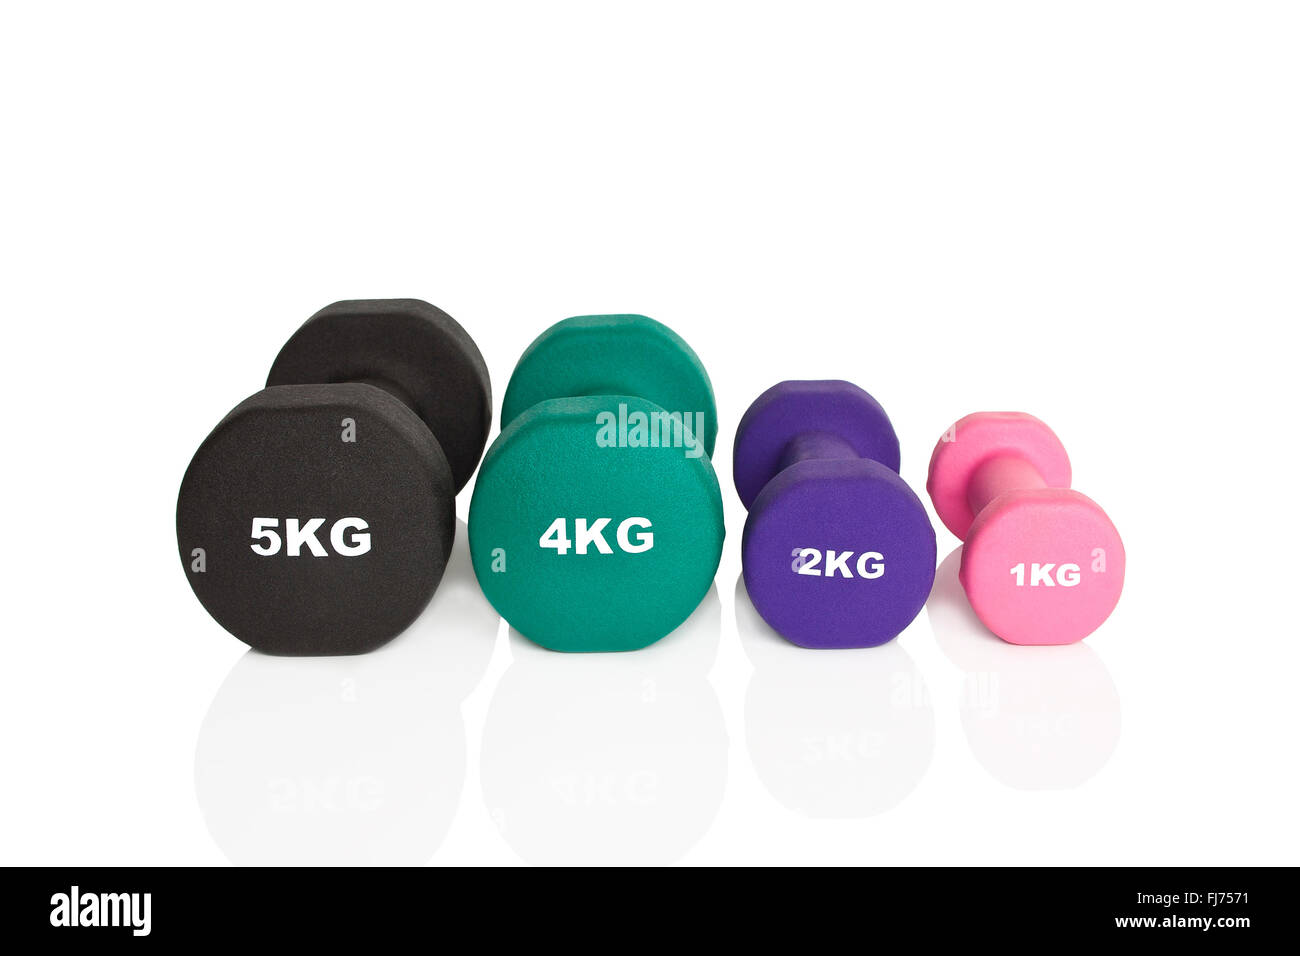 Schwarz, grün, lila und rosa Hanteln isoliert auf weißem Hintergrund. Gewichte für ein Fitness-Training. Stockfoto